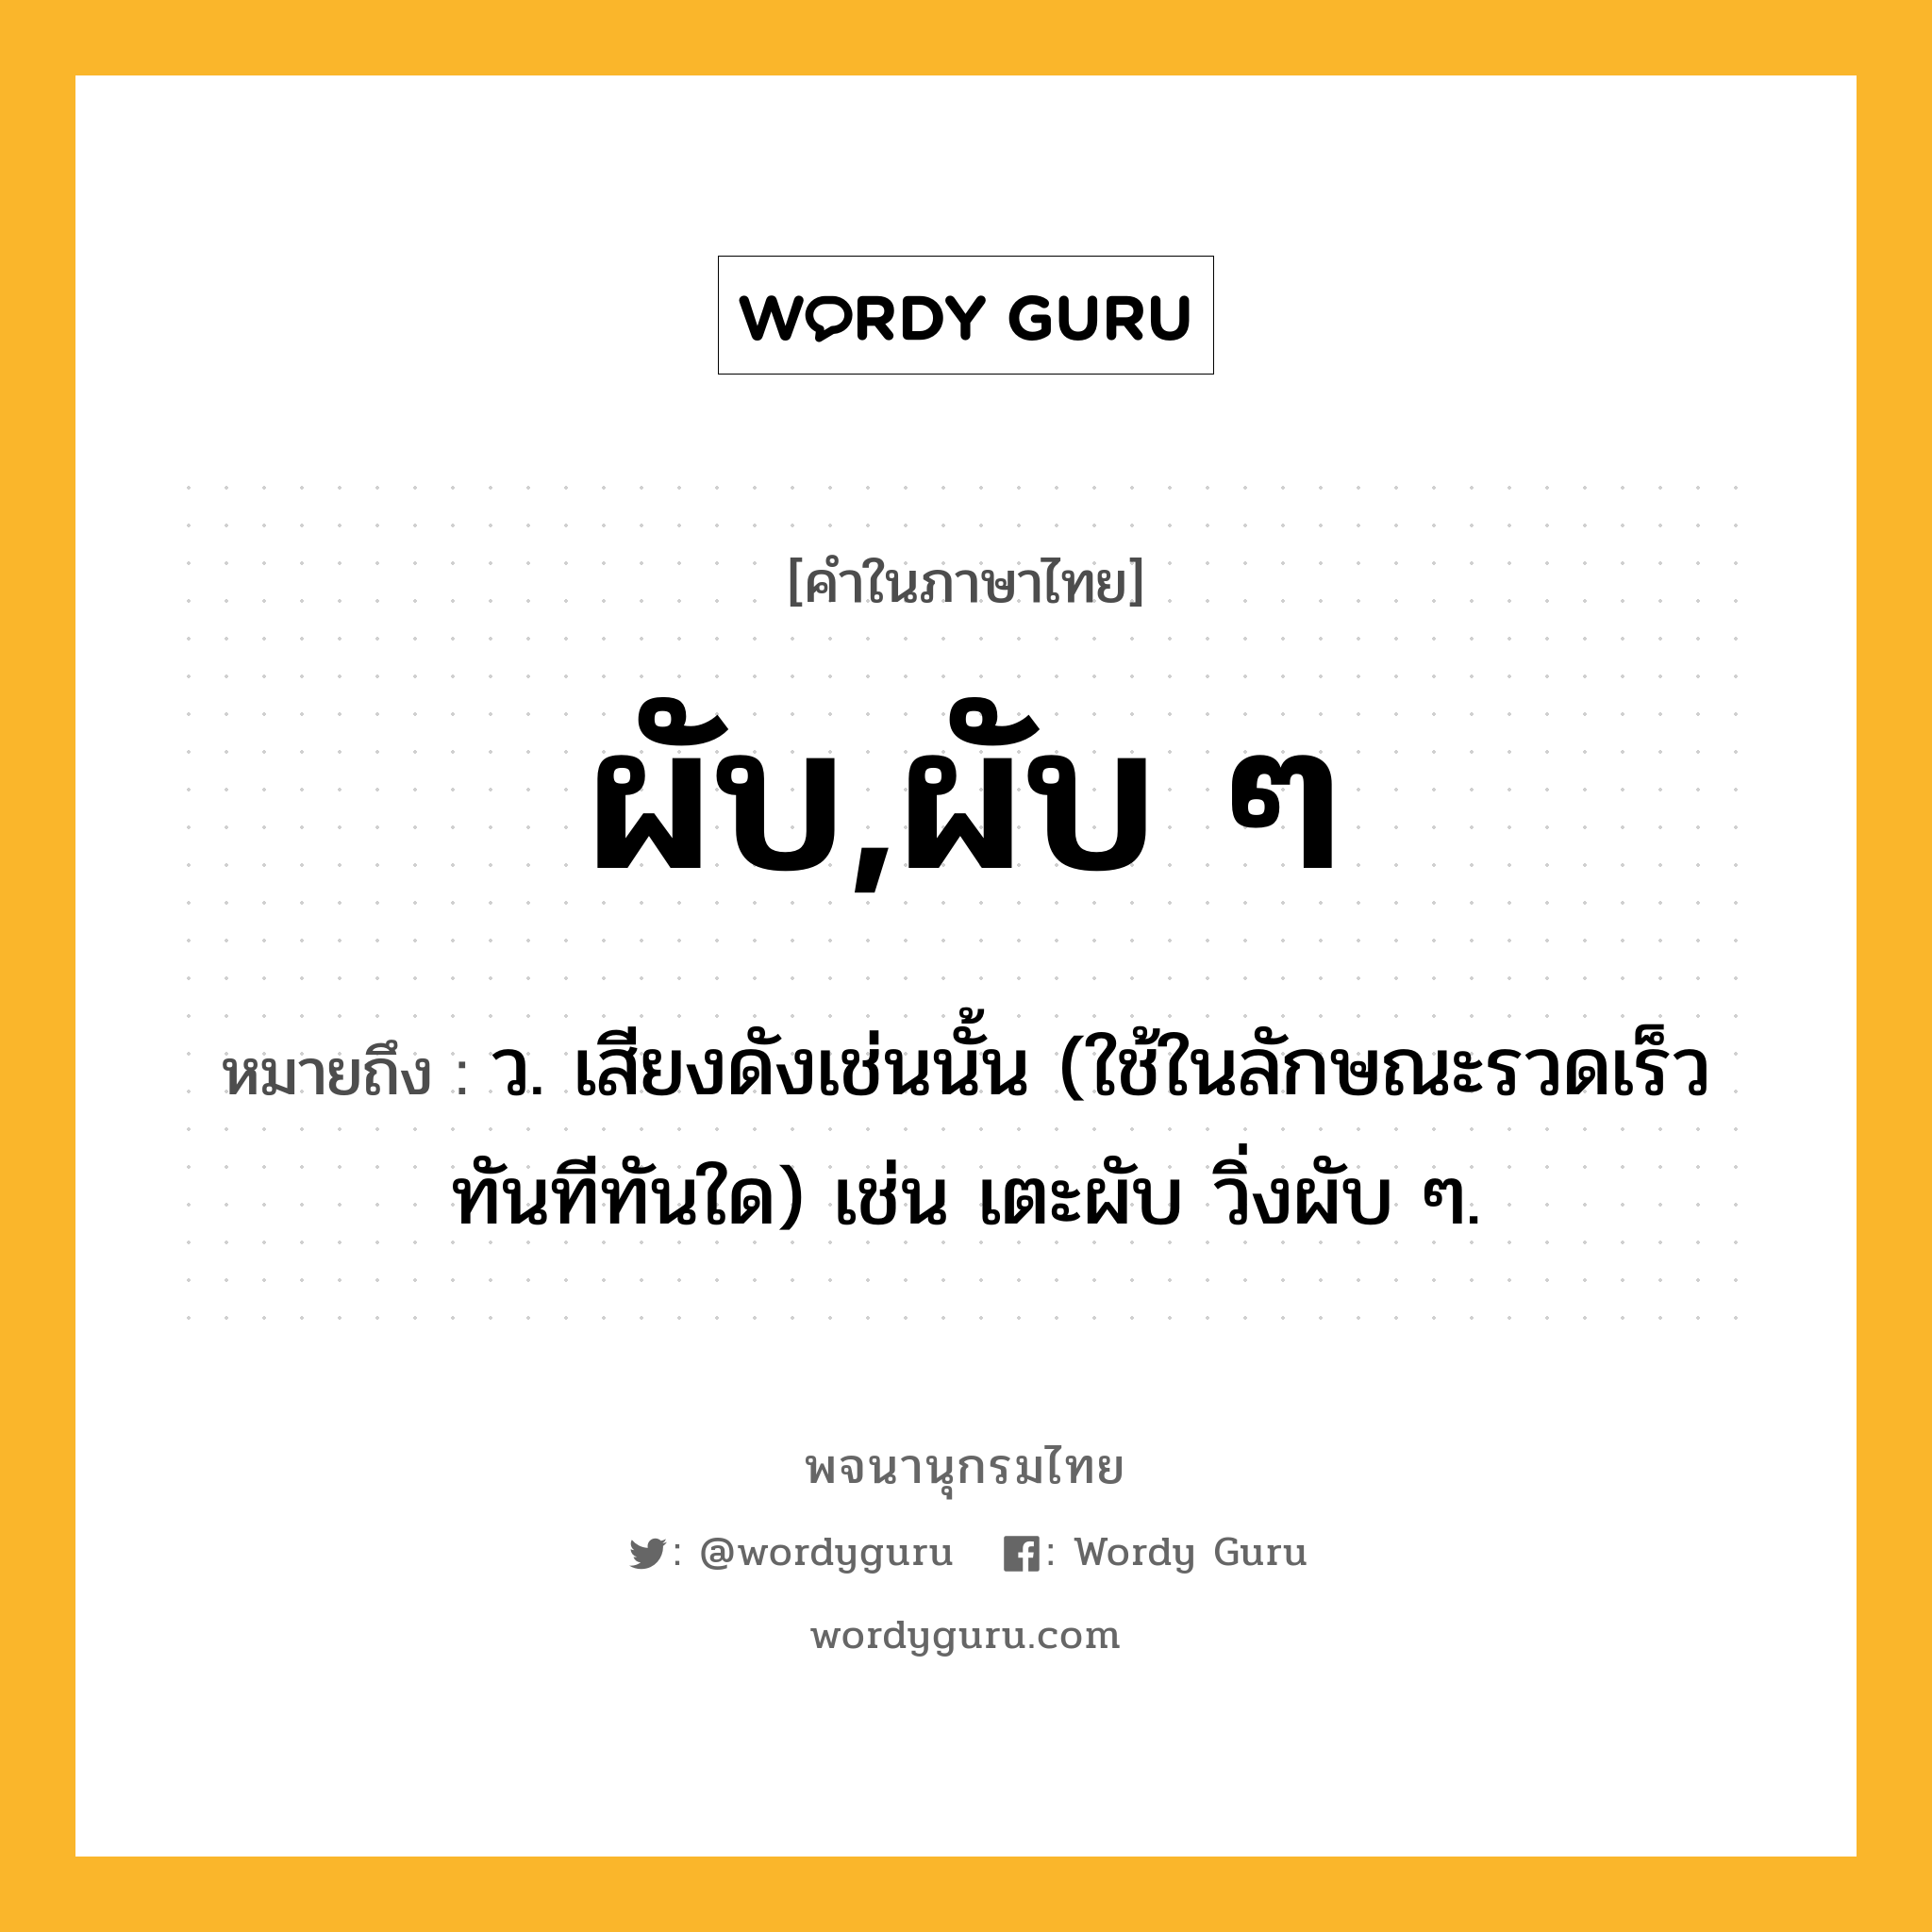 ผับ,ผับ ๆ ความหมาย หมายถึงอะไร?, คำในภาษาไทย ผับ,ผับ ๆ หมายถึง ว. เสียงดังเช่นนั้น (ใช้ในลักษณะรวดเร็วทันทีทันใด) เช่น เตะผับ วิ่งผับ ๆ.